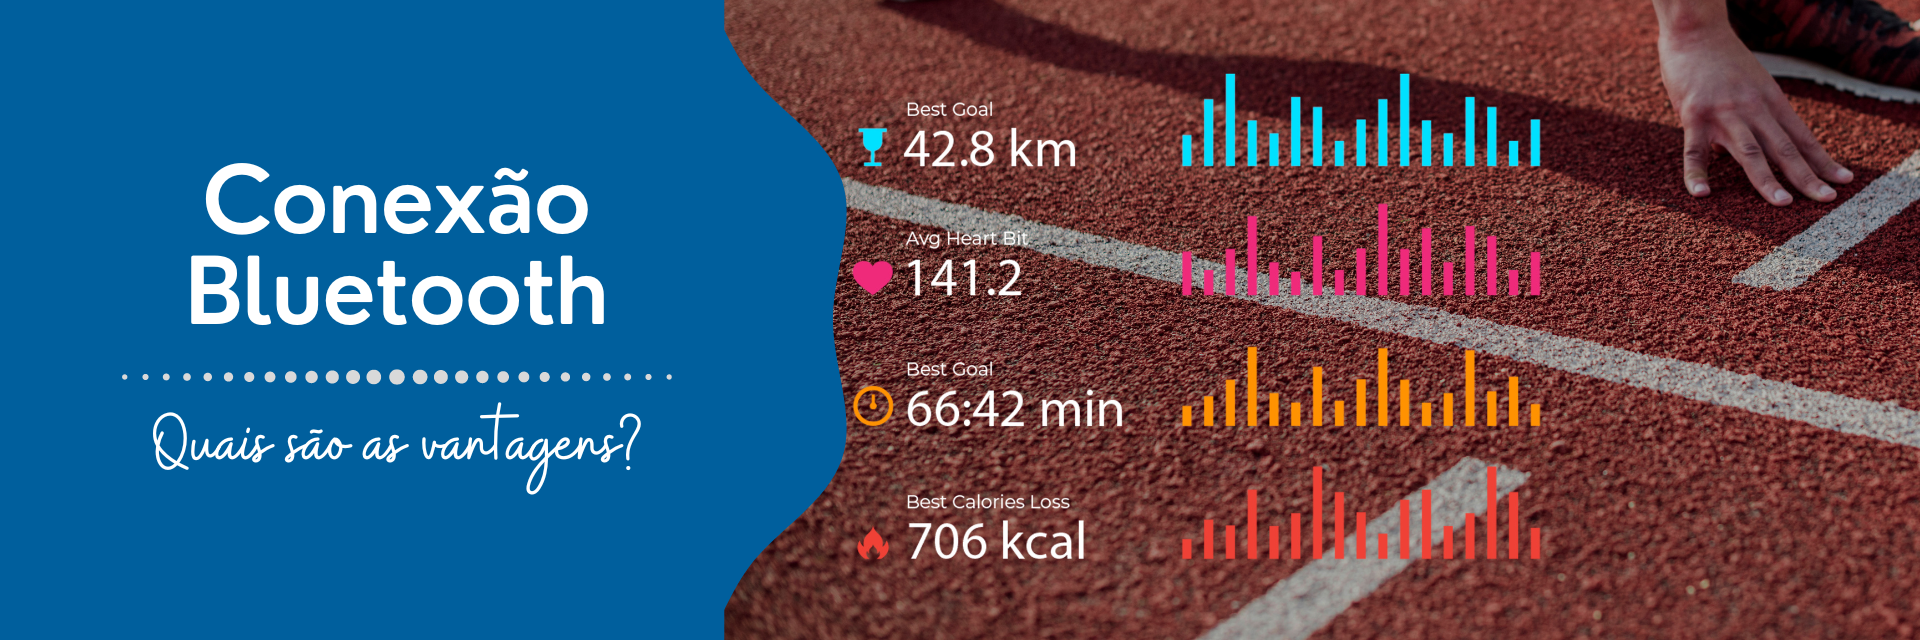 Imagem de corredor com métricas de um aplicativo de treino de corrida